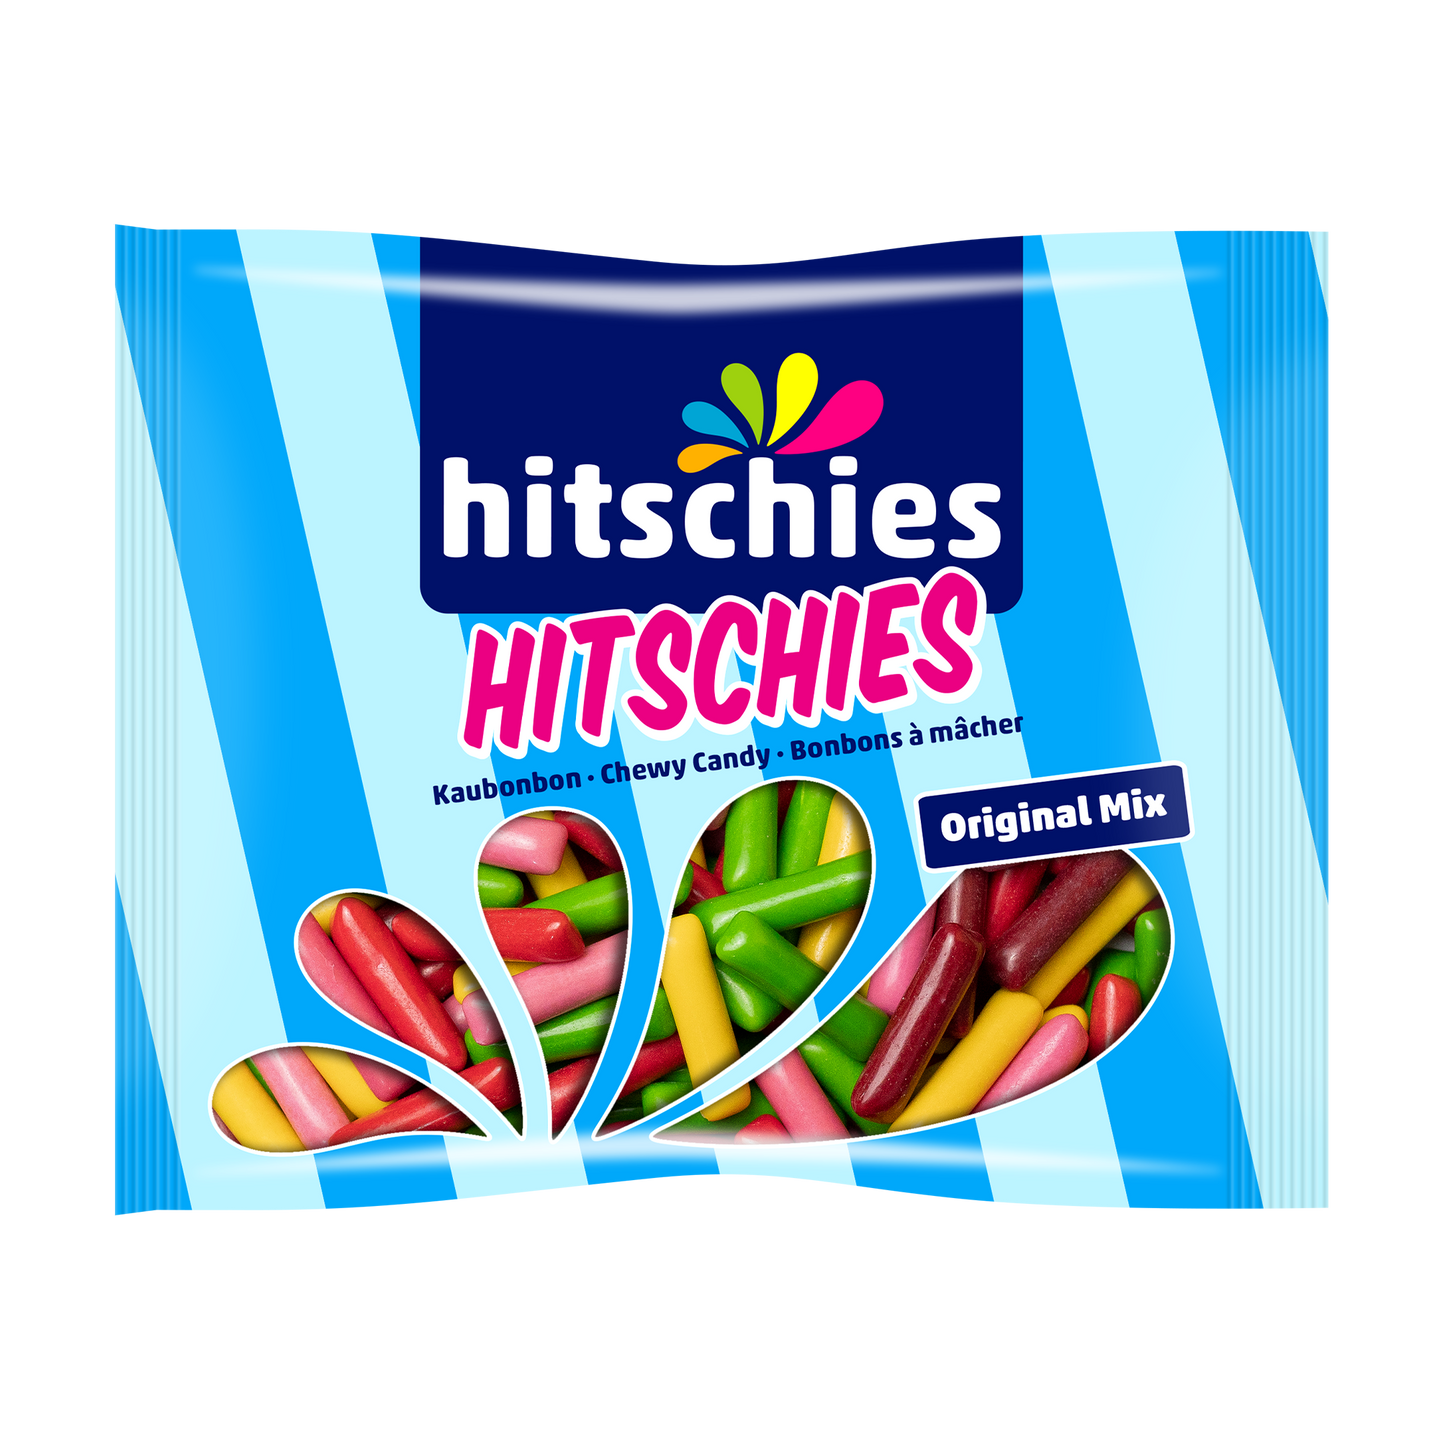 hitschler-hitschies-10654-Hitschies-Original-Mix-210g-Sussigkeiten_720x@2x